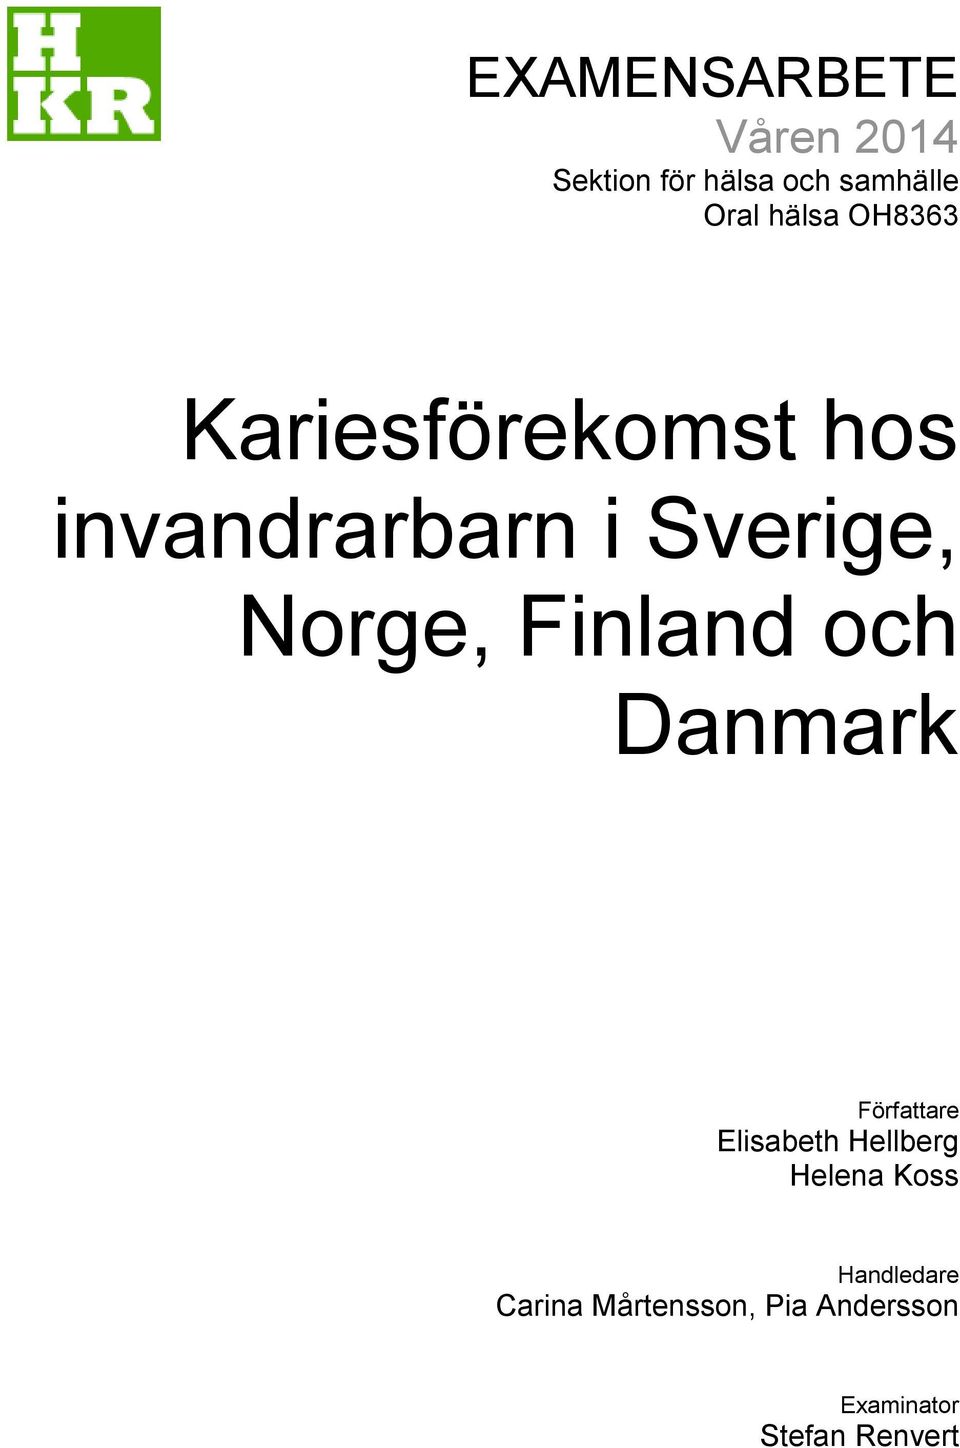 Finland och Danmark Författare Elisabeth Hellberg Helena Koss